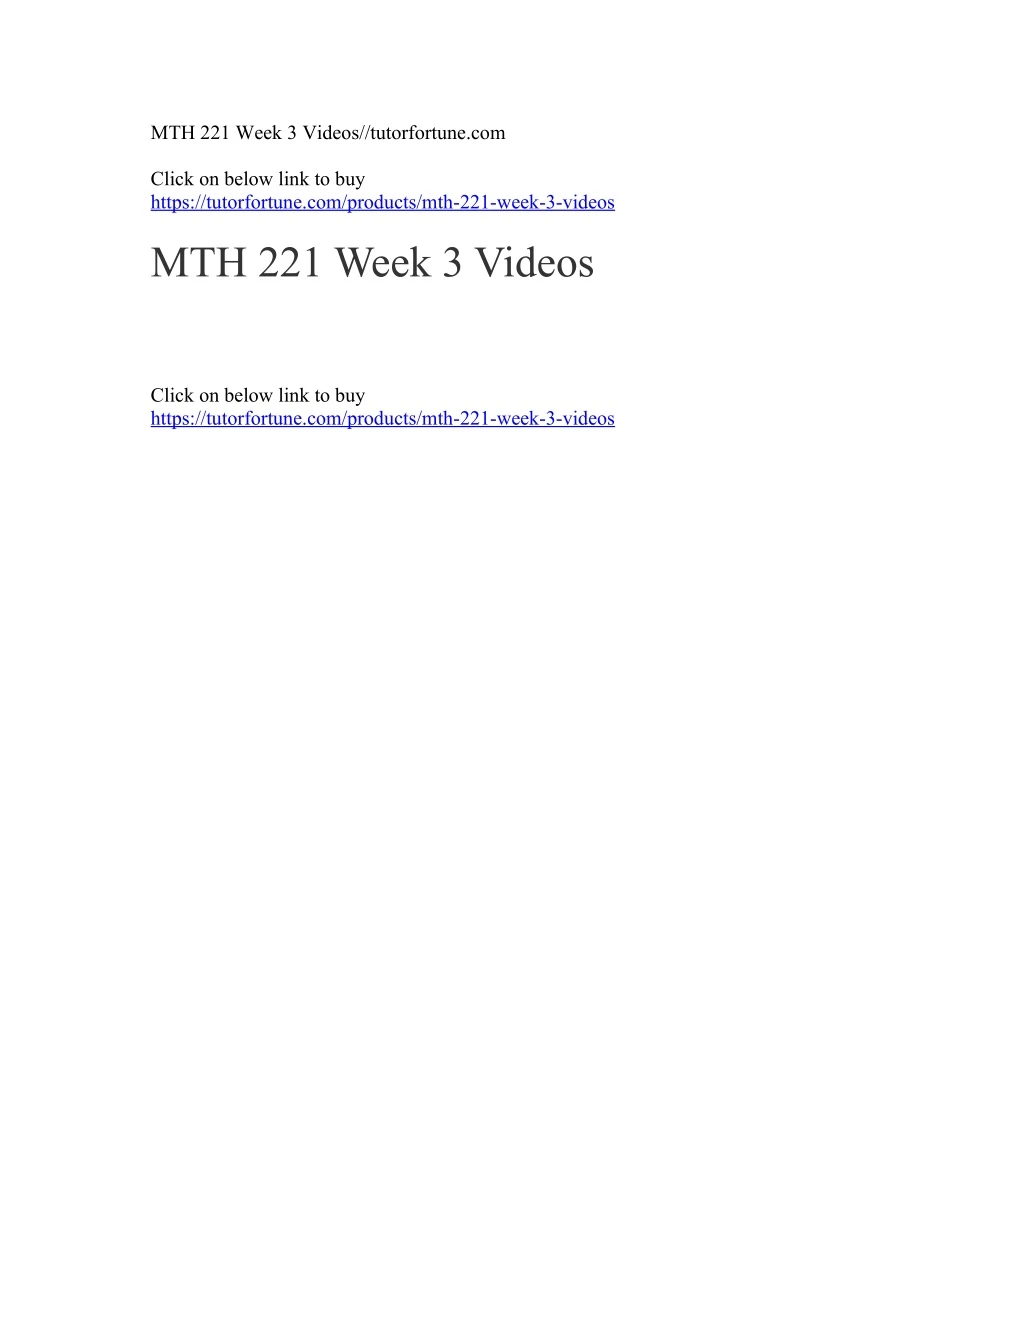 mth 221 week 3 videos tutorfortune com